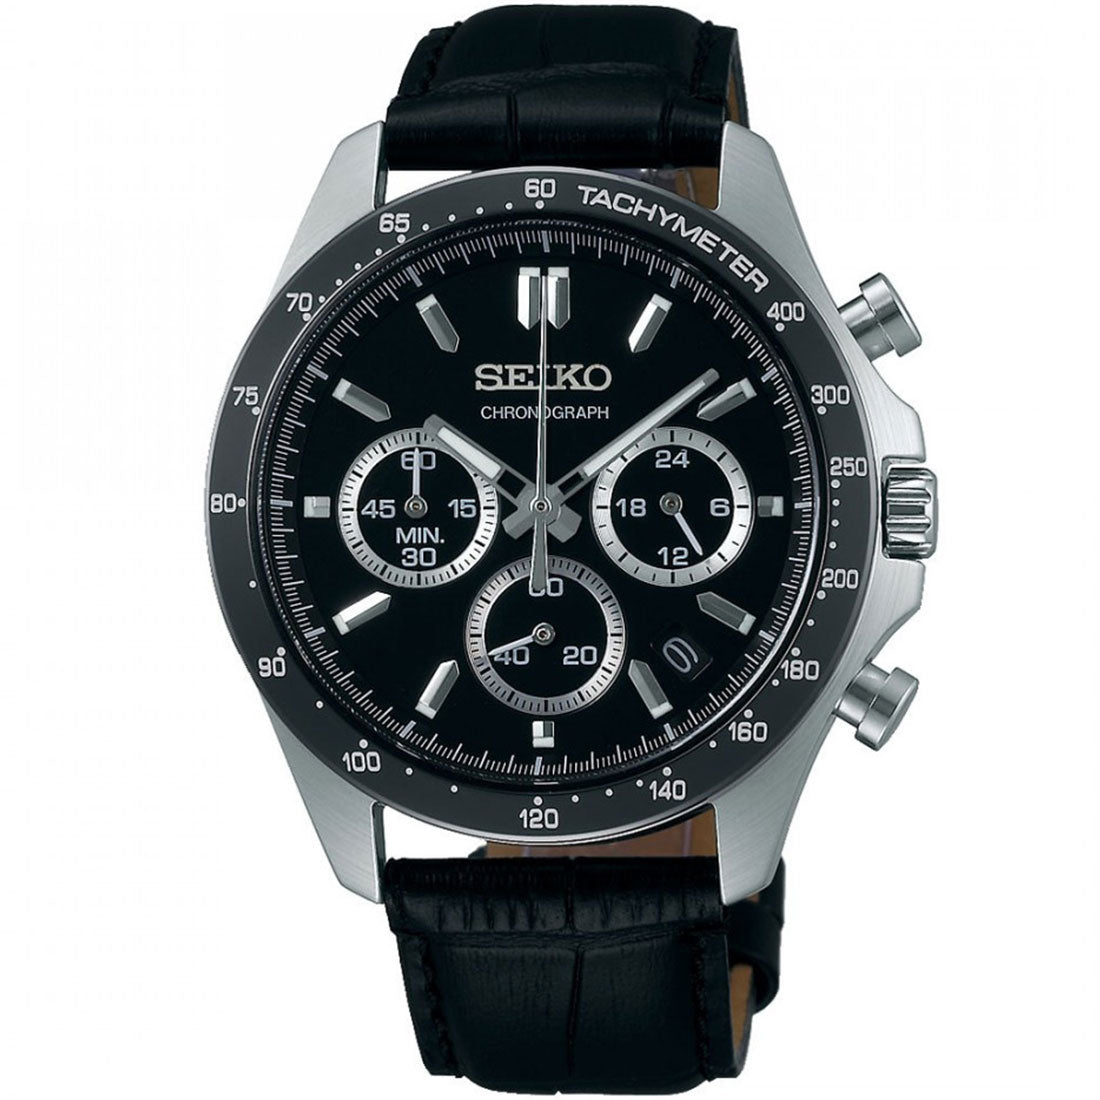 Seiko JDM Spirit Selection SBTR021 Black Dial Chronograph Quartz Mens Leather Watch -Seiko